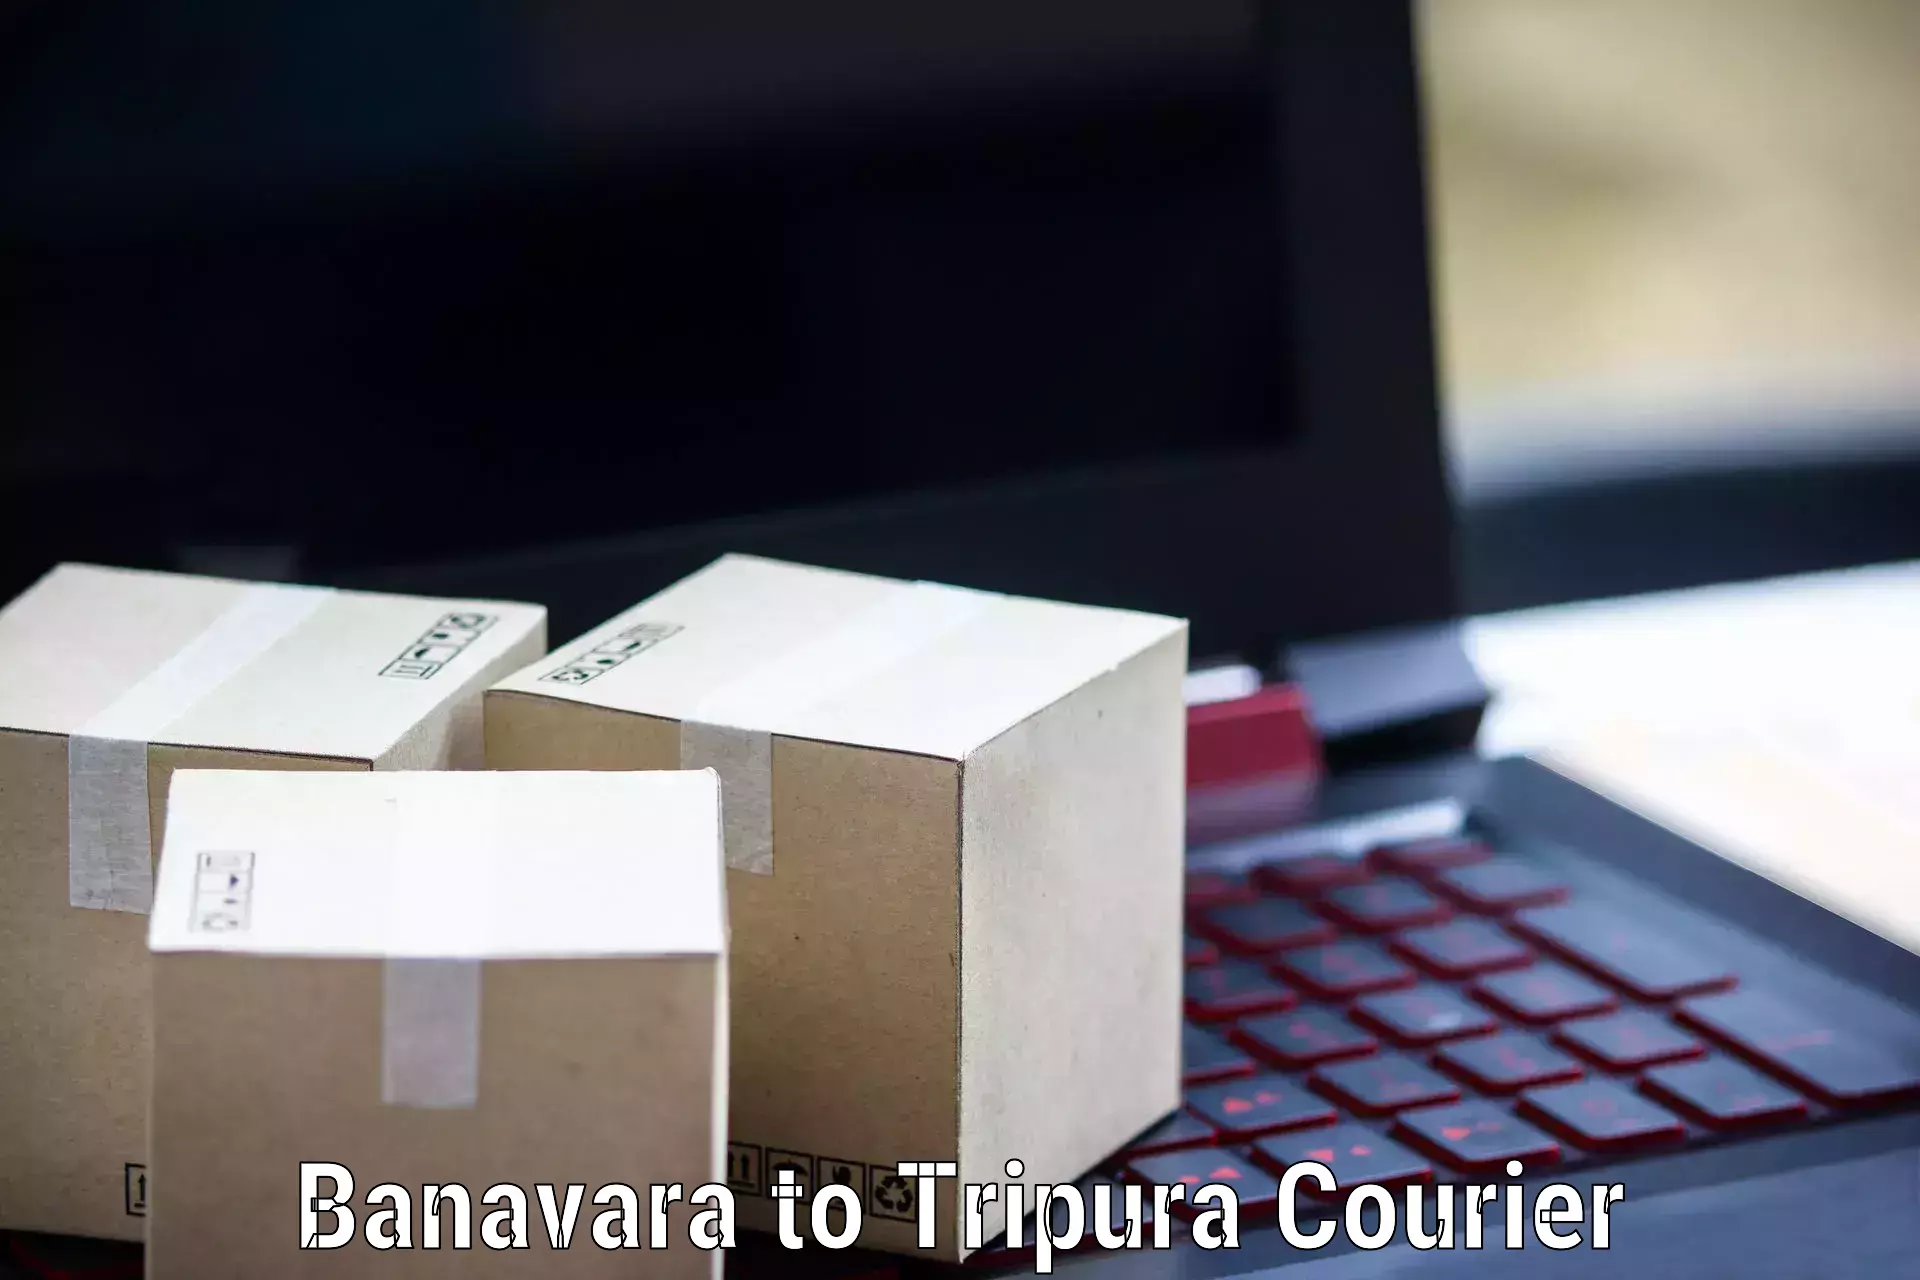 Premium courier solutions Banavara to Udaipur Tripura